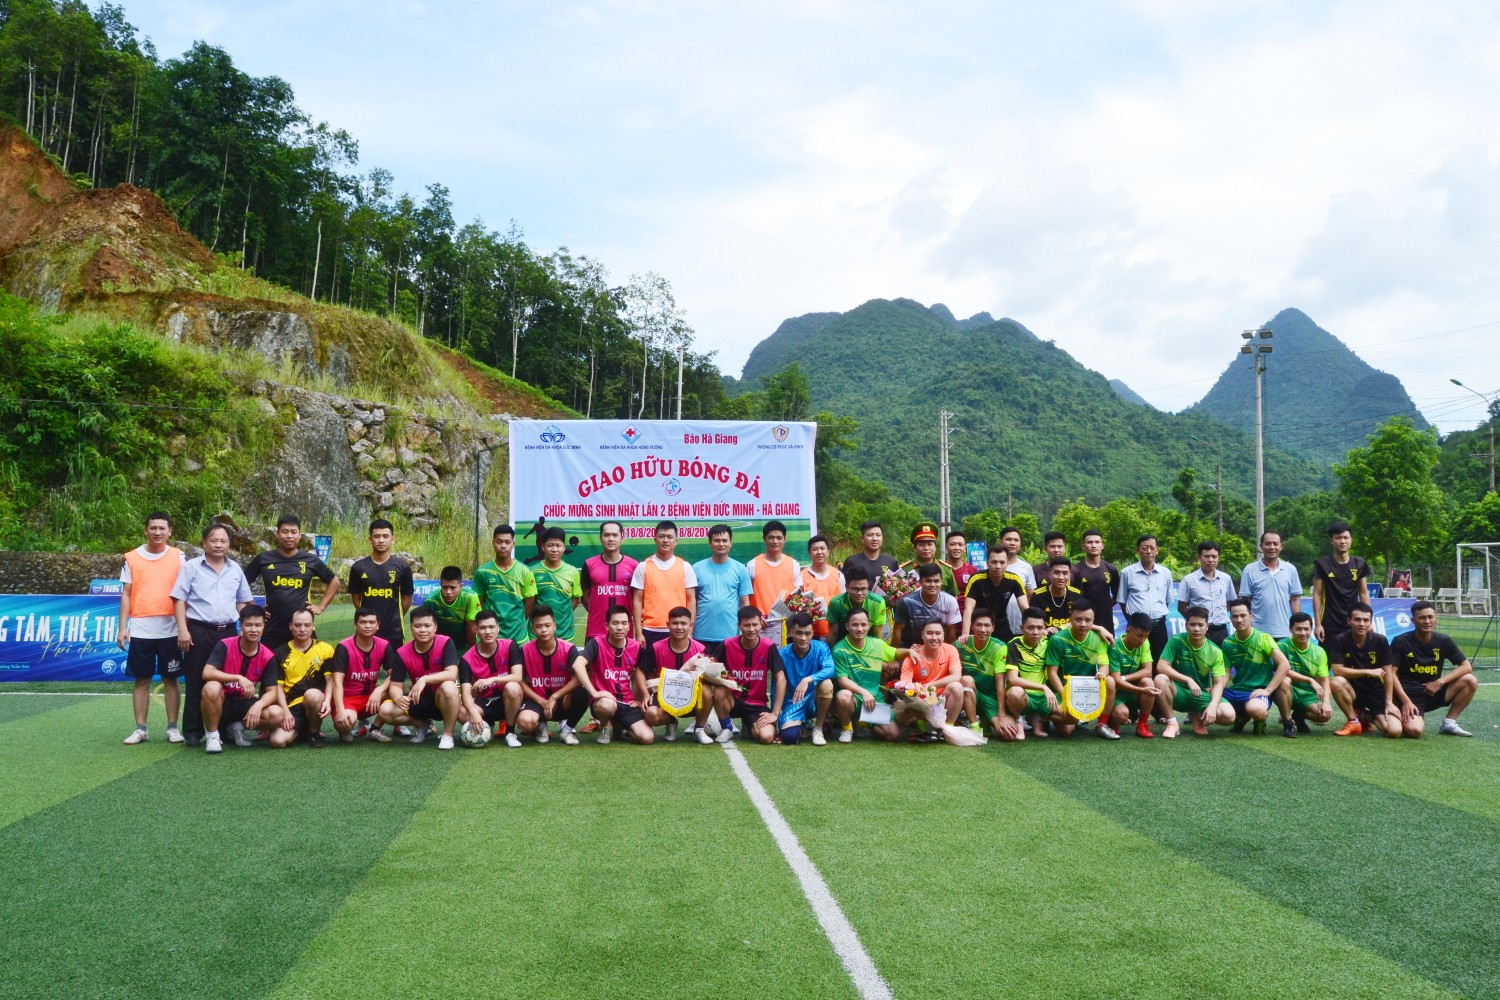 Giao hữu bóng đá mừng sinh nhật Bệnh viện Đức Minh – Hà Giang